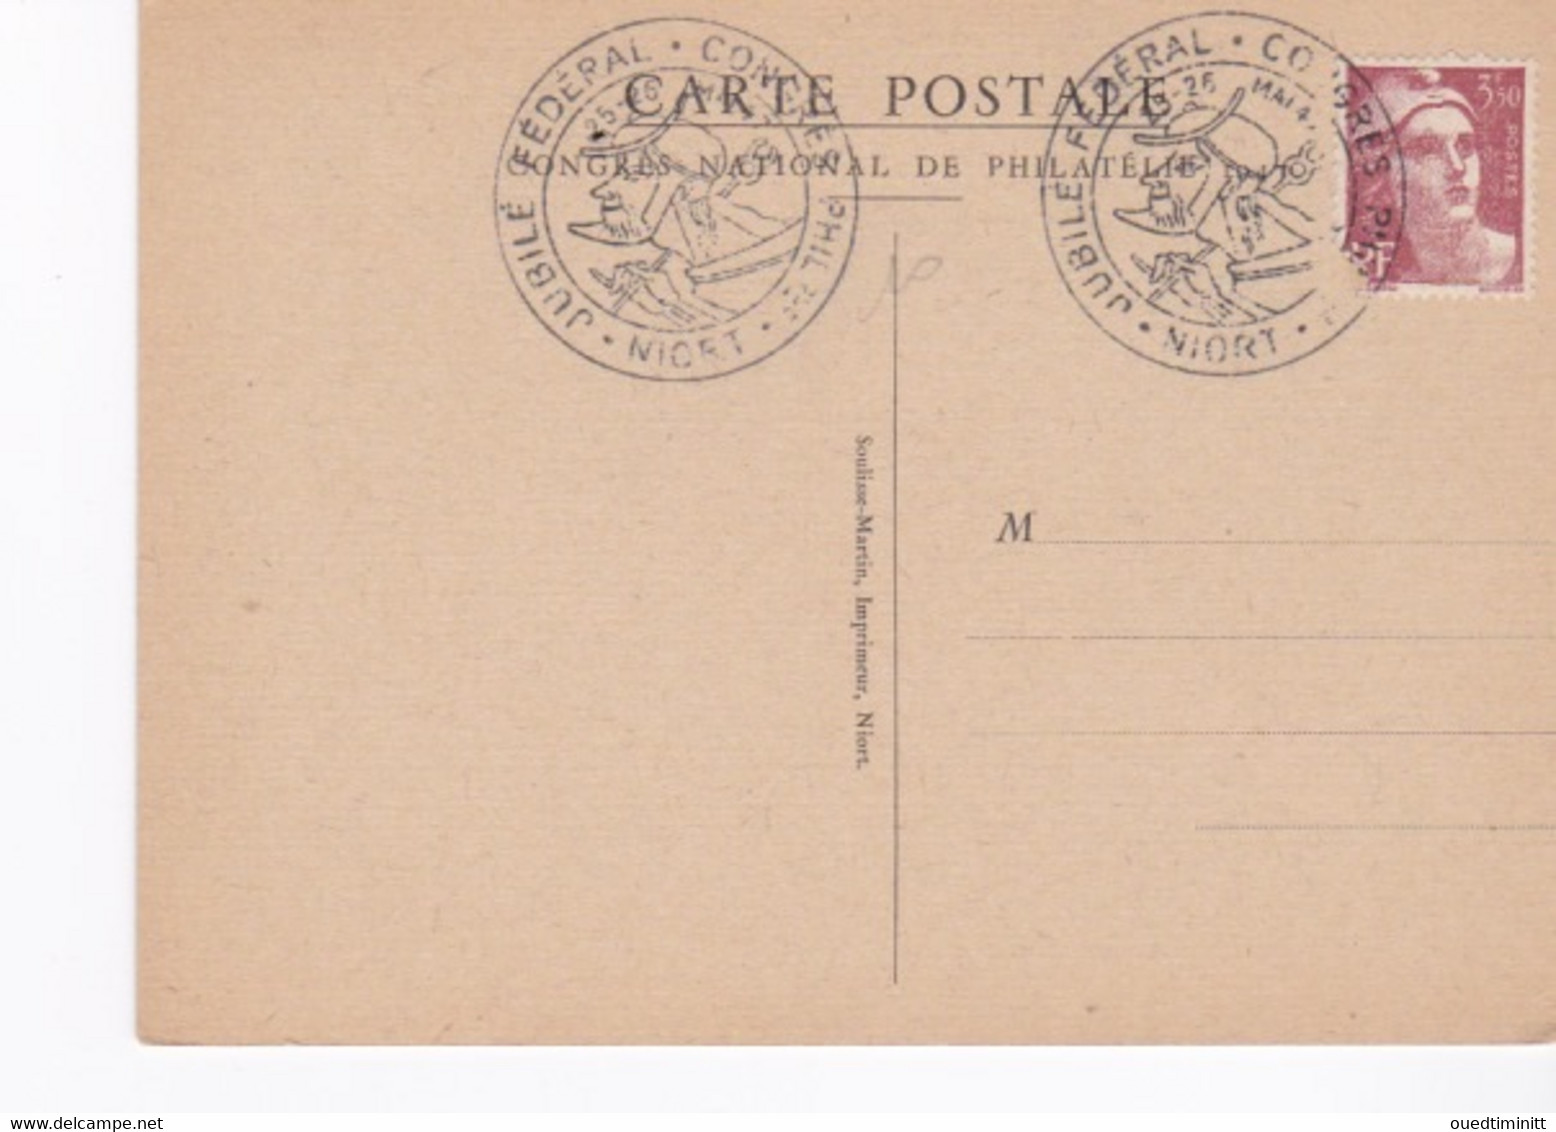 Illustration De Pierre Gandon Le Donjon De Niort Jubilé Fédéral Congrès Philatélique 1947 - Briefmarkenausstellungen